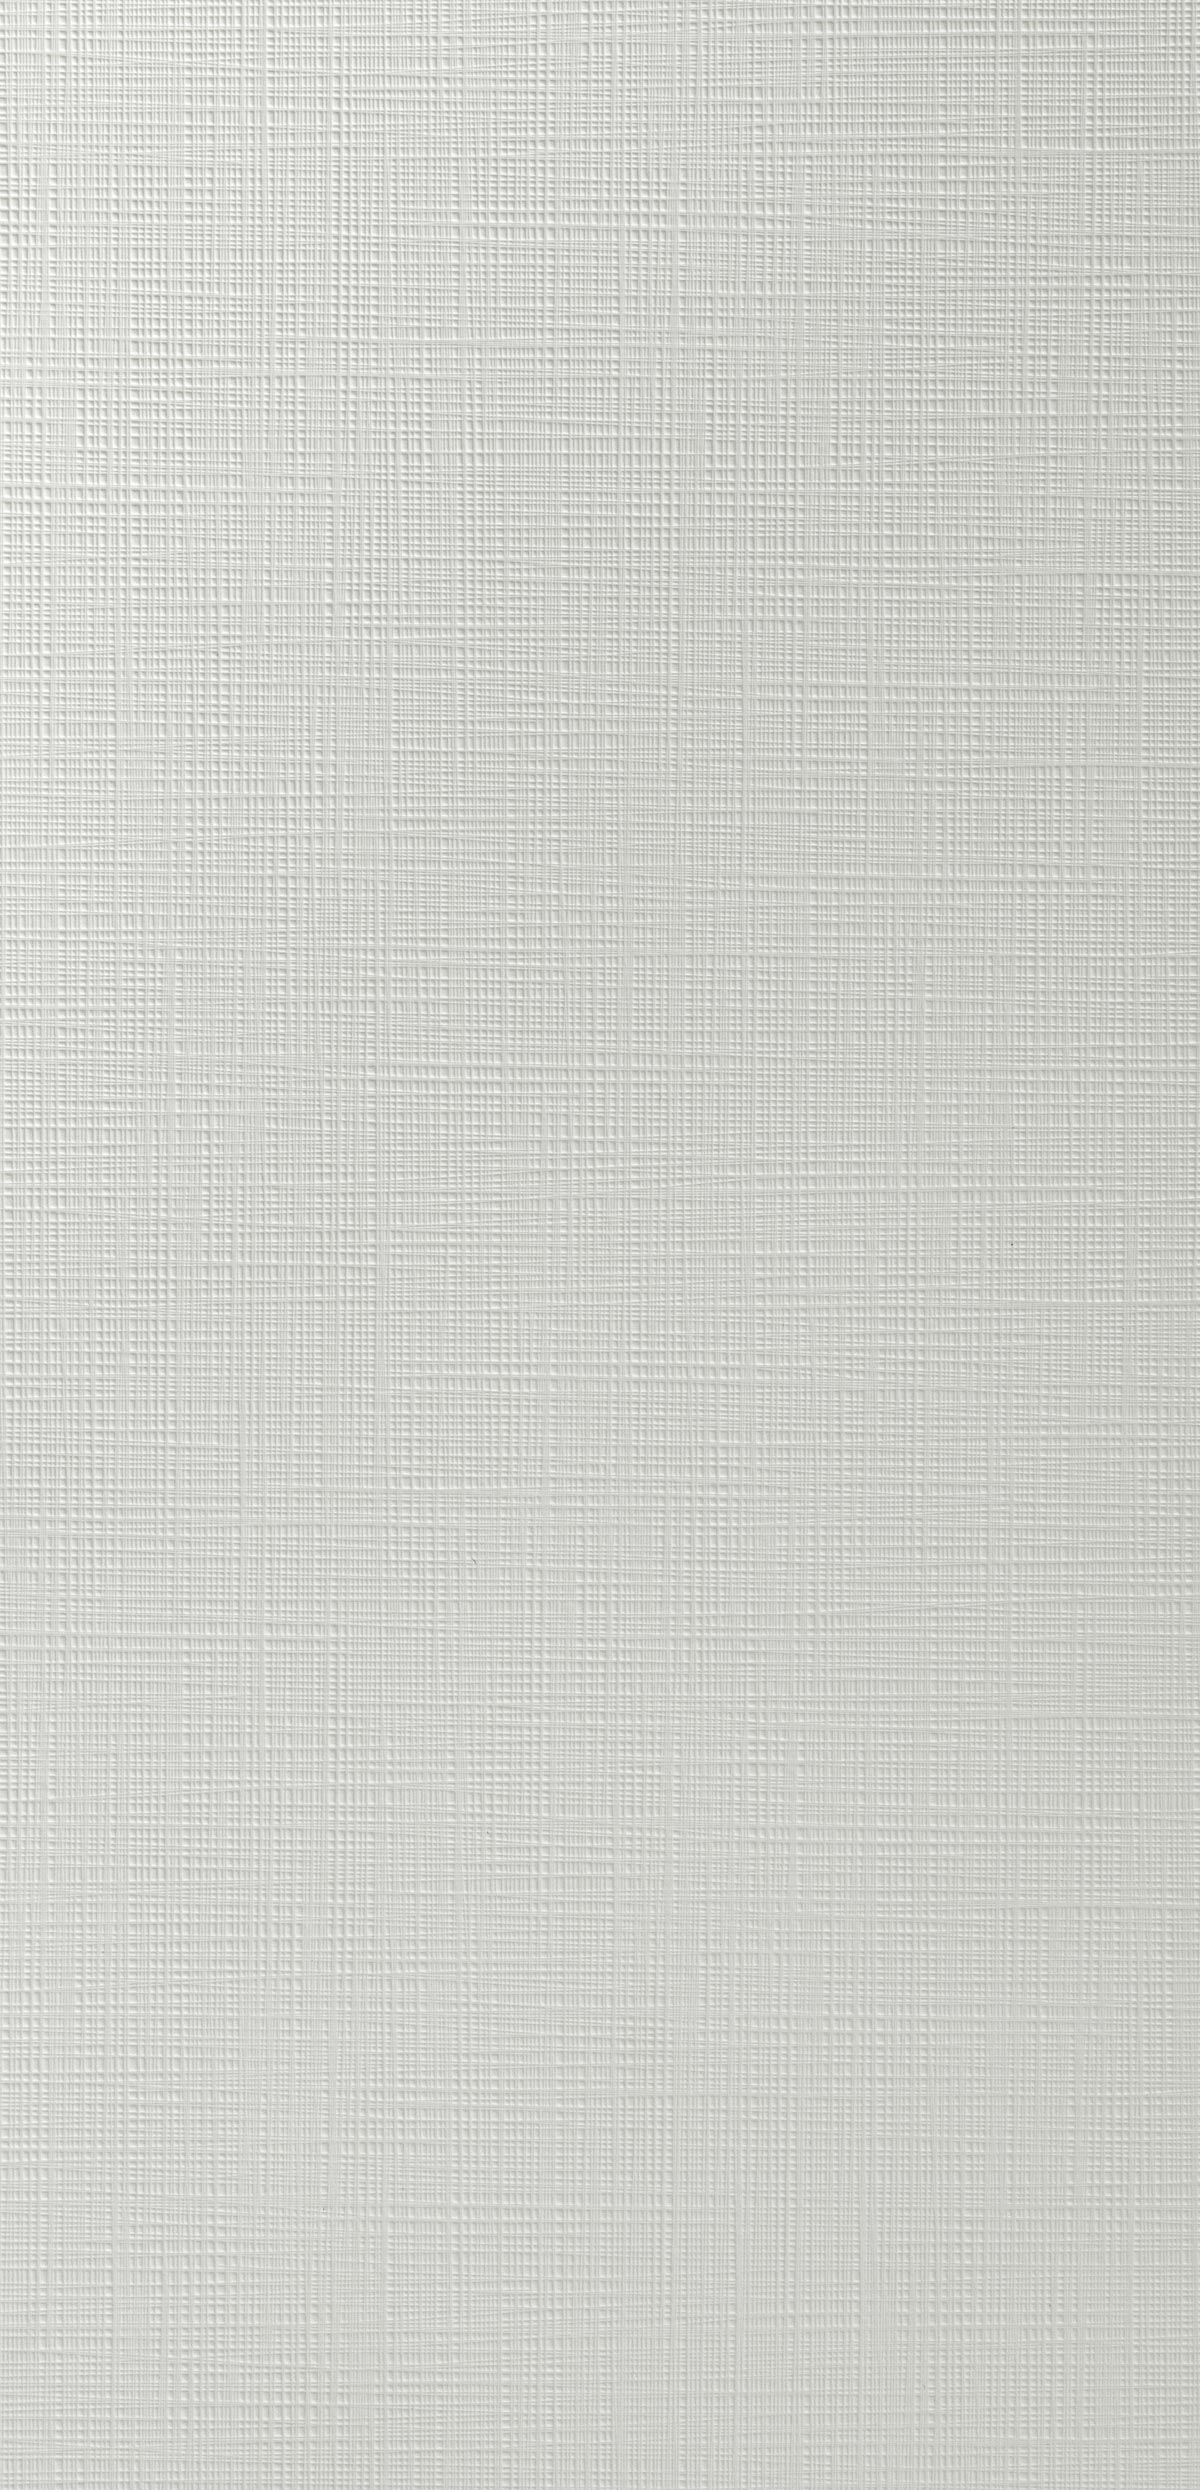 Fibra Neutral grey 026-panel